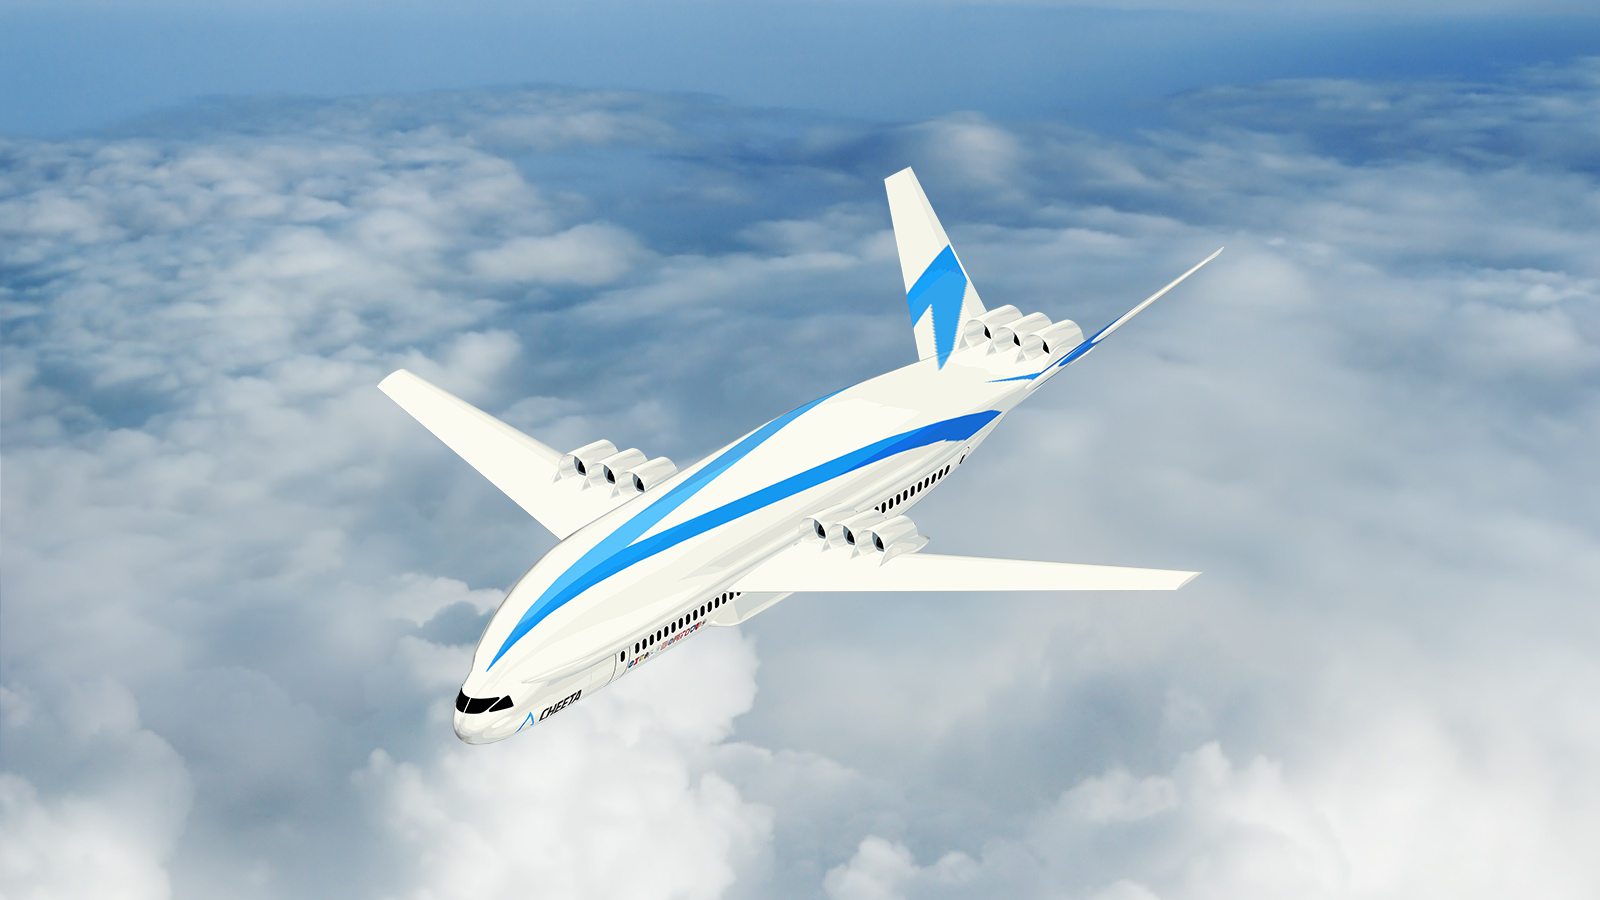 future aircraft 2050